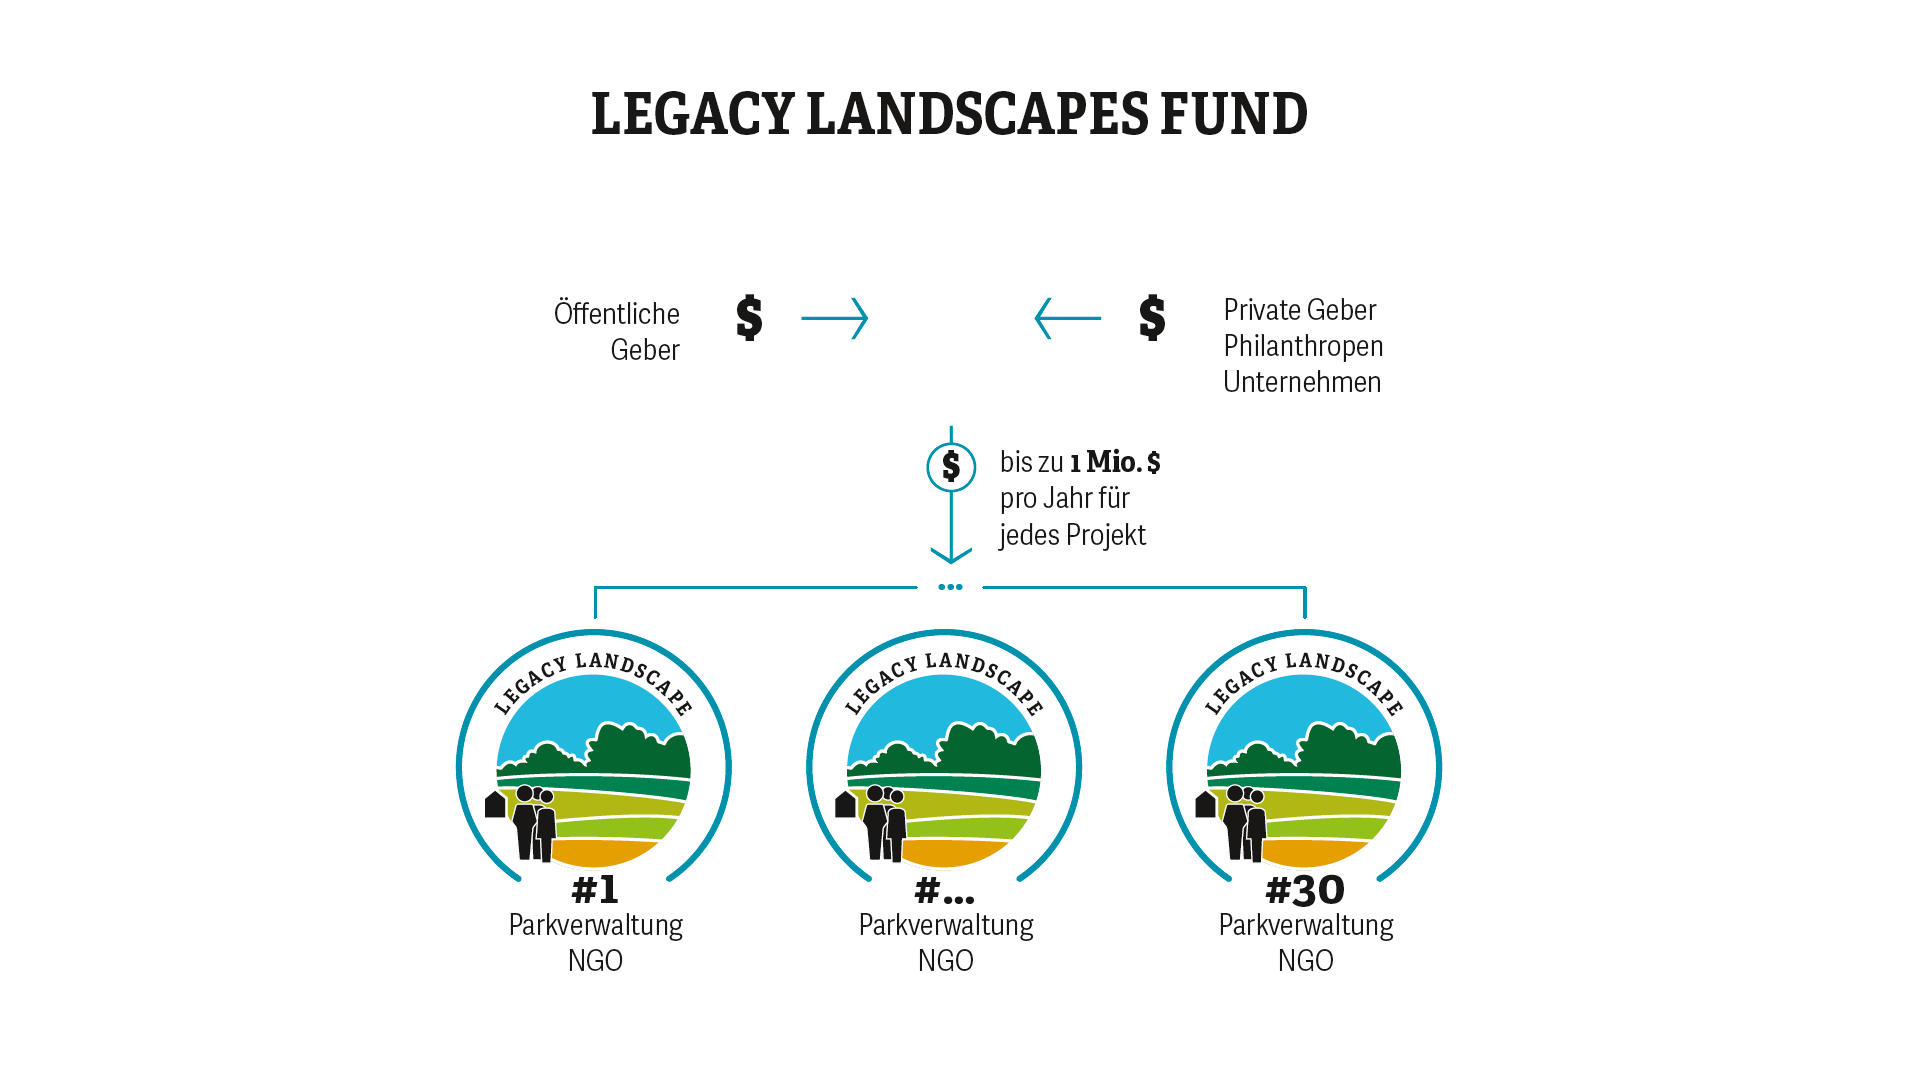 Finanzierung des Legacy Landscapes Fund